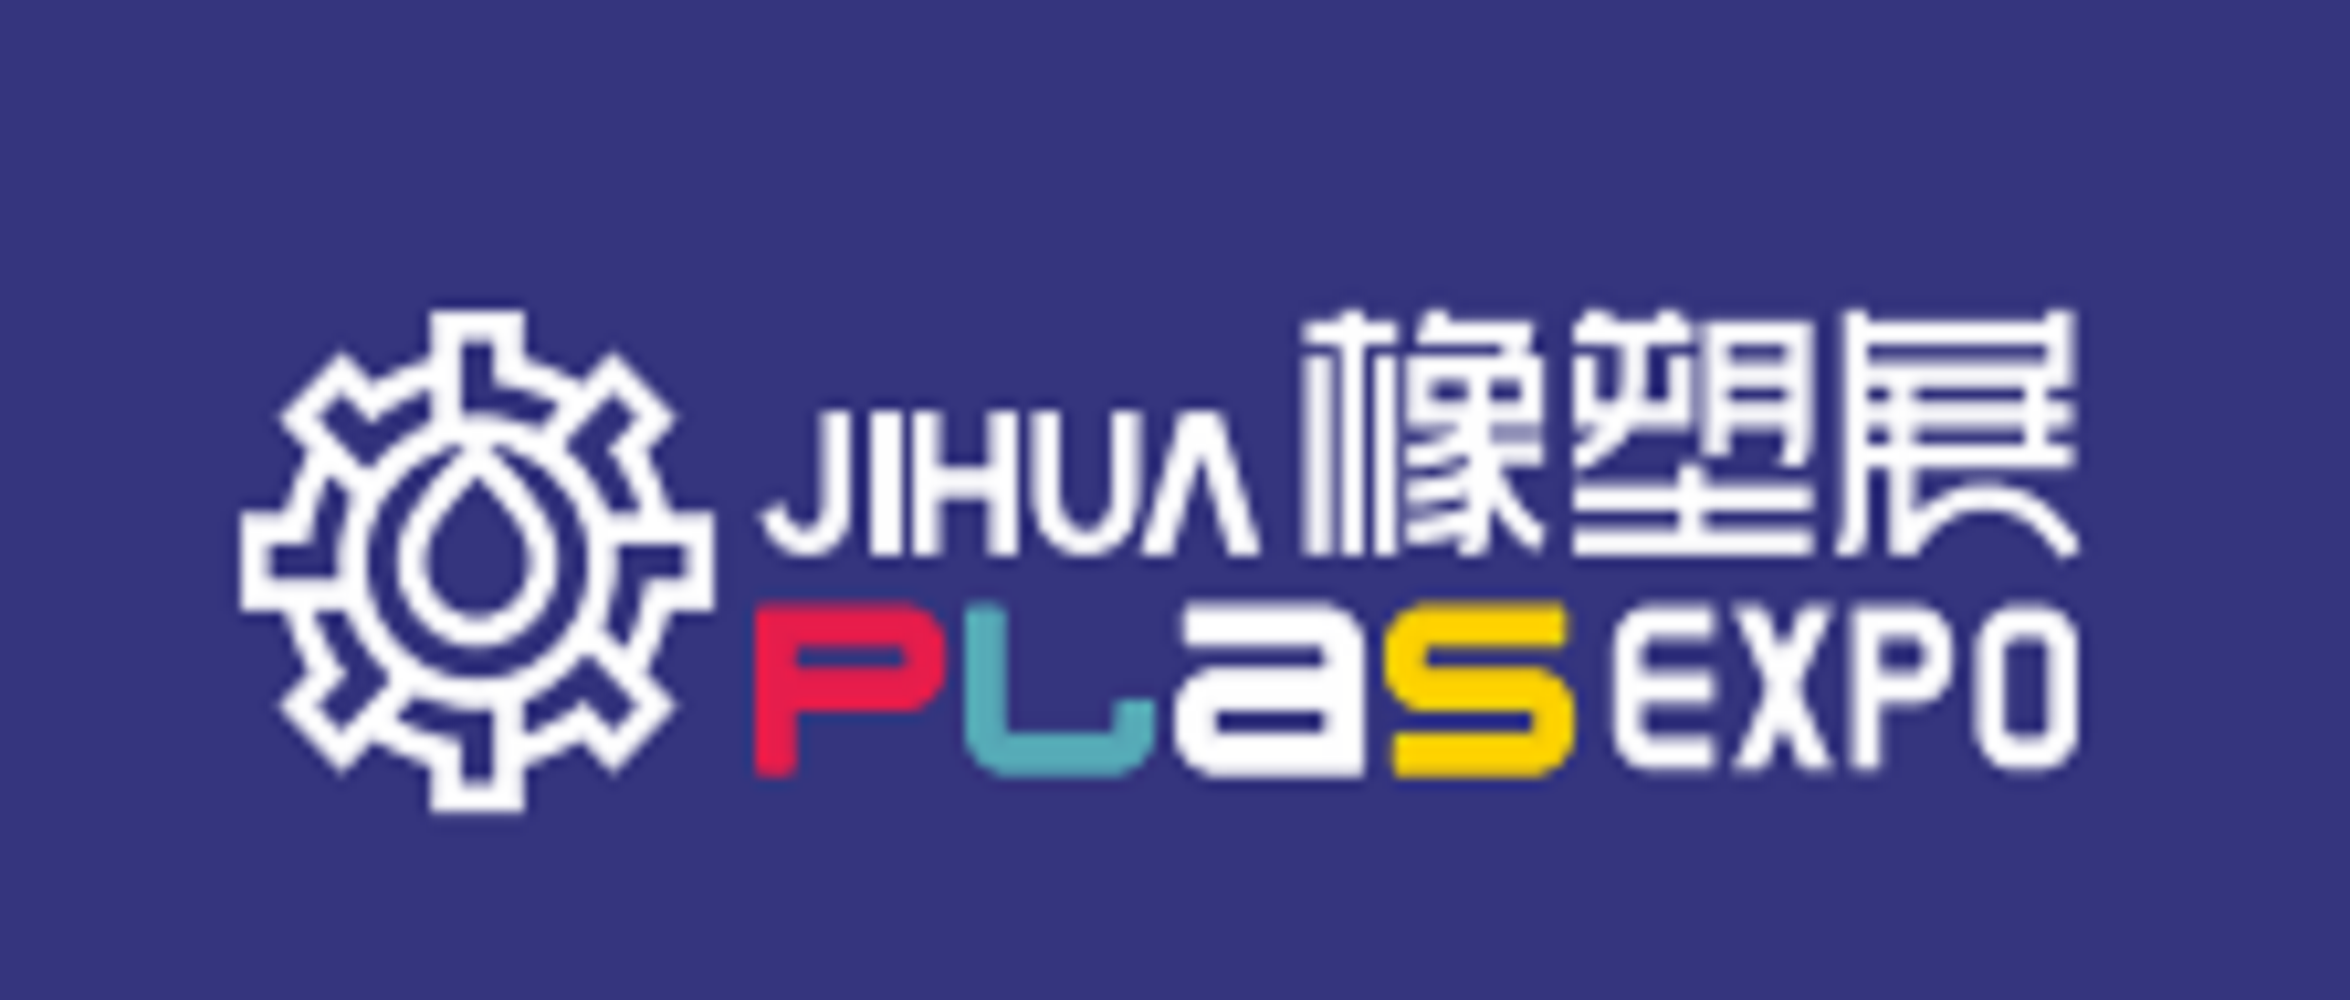 第15届深圳国际塑料橡胶工业展览会 / 深圳国际高分子新材料新装备博览会